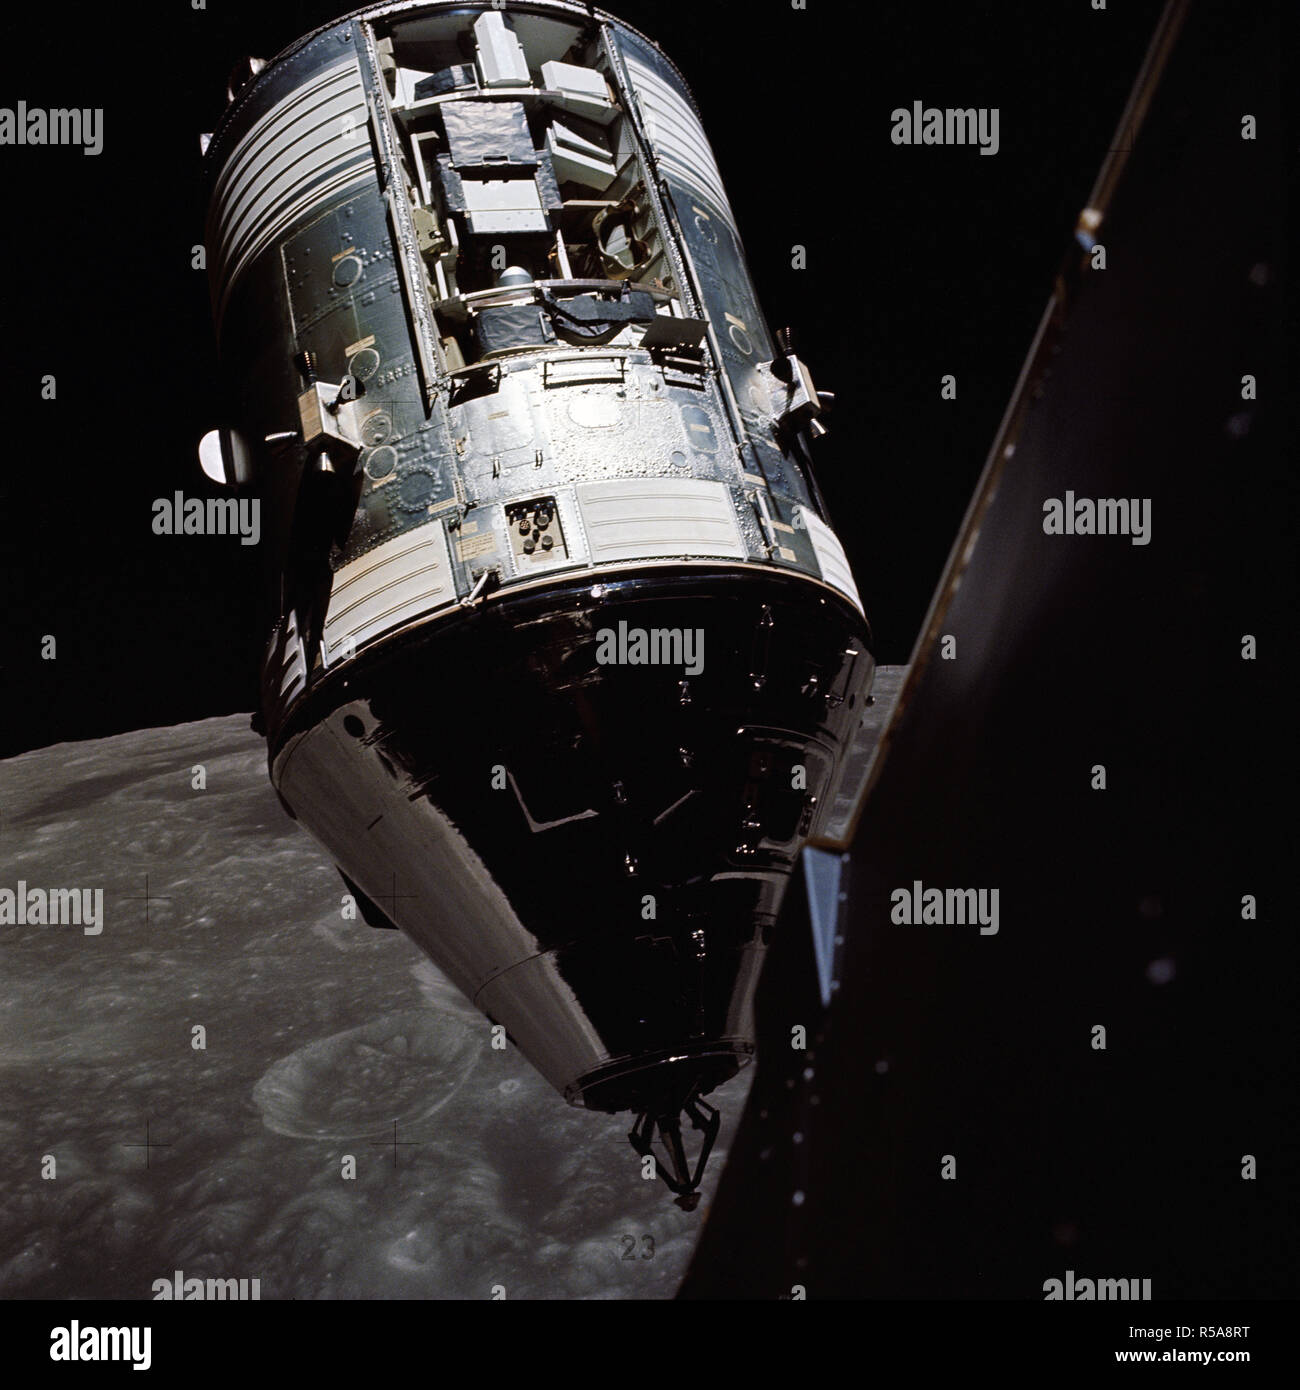 (14 dicembre 1972) --- Una vista eccellente dell'Apollo 17 il comando e moduli di servizio (CSM) fotografato dal Modulo Lunare (LM) "Challenger" durante il rendezvous e le manovre di attracco in orbita lunare. Foto Stock